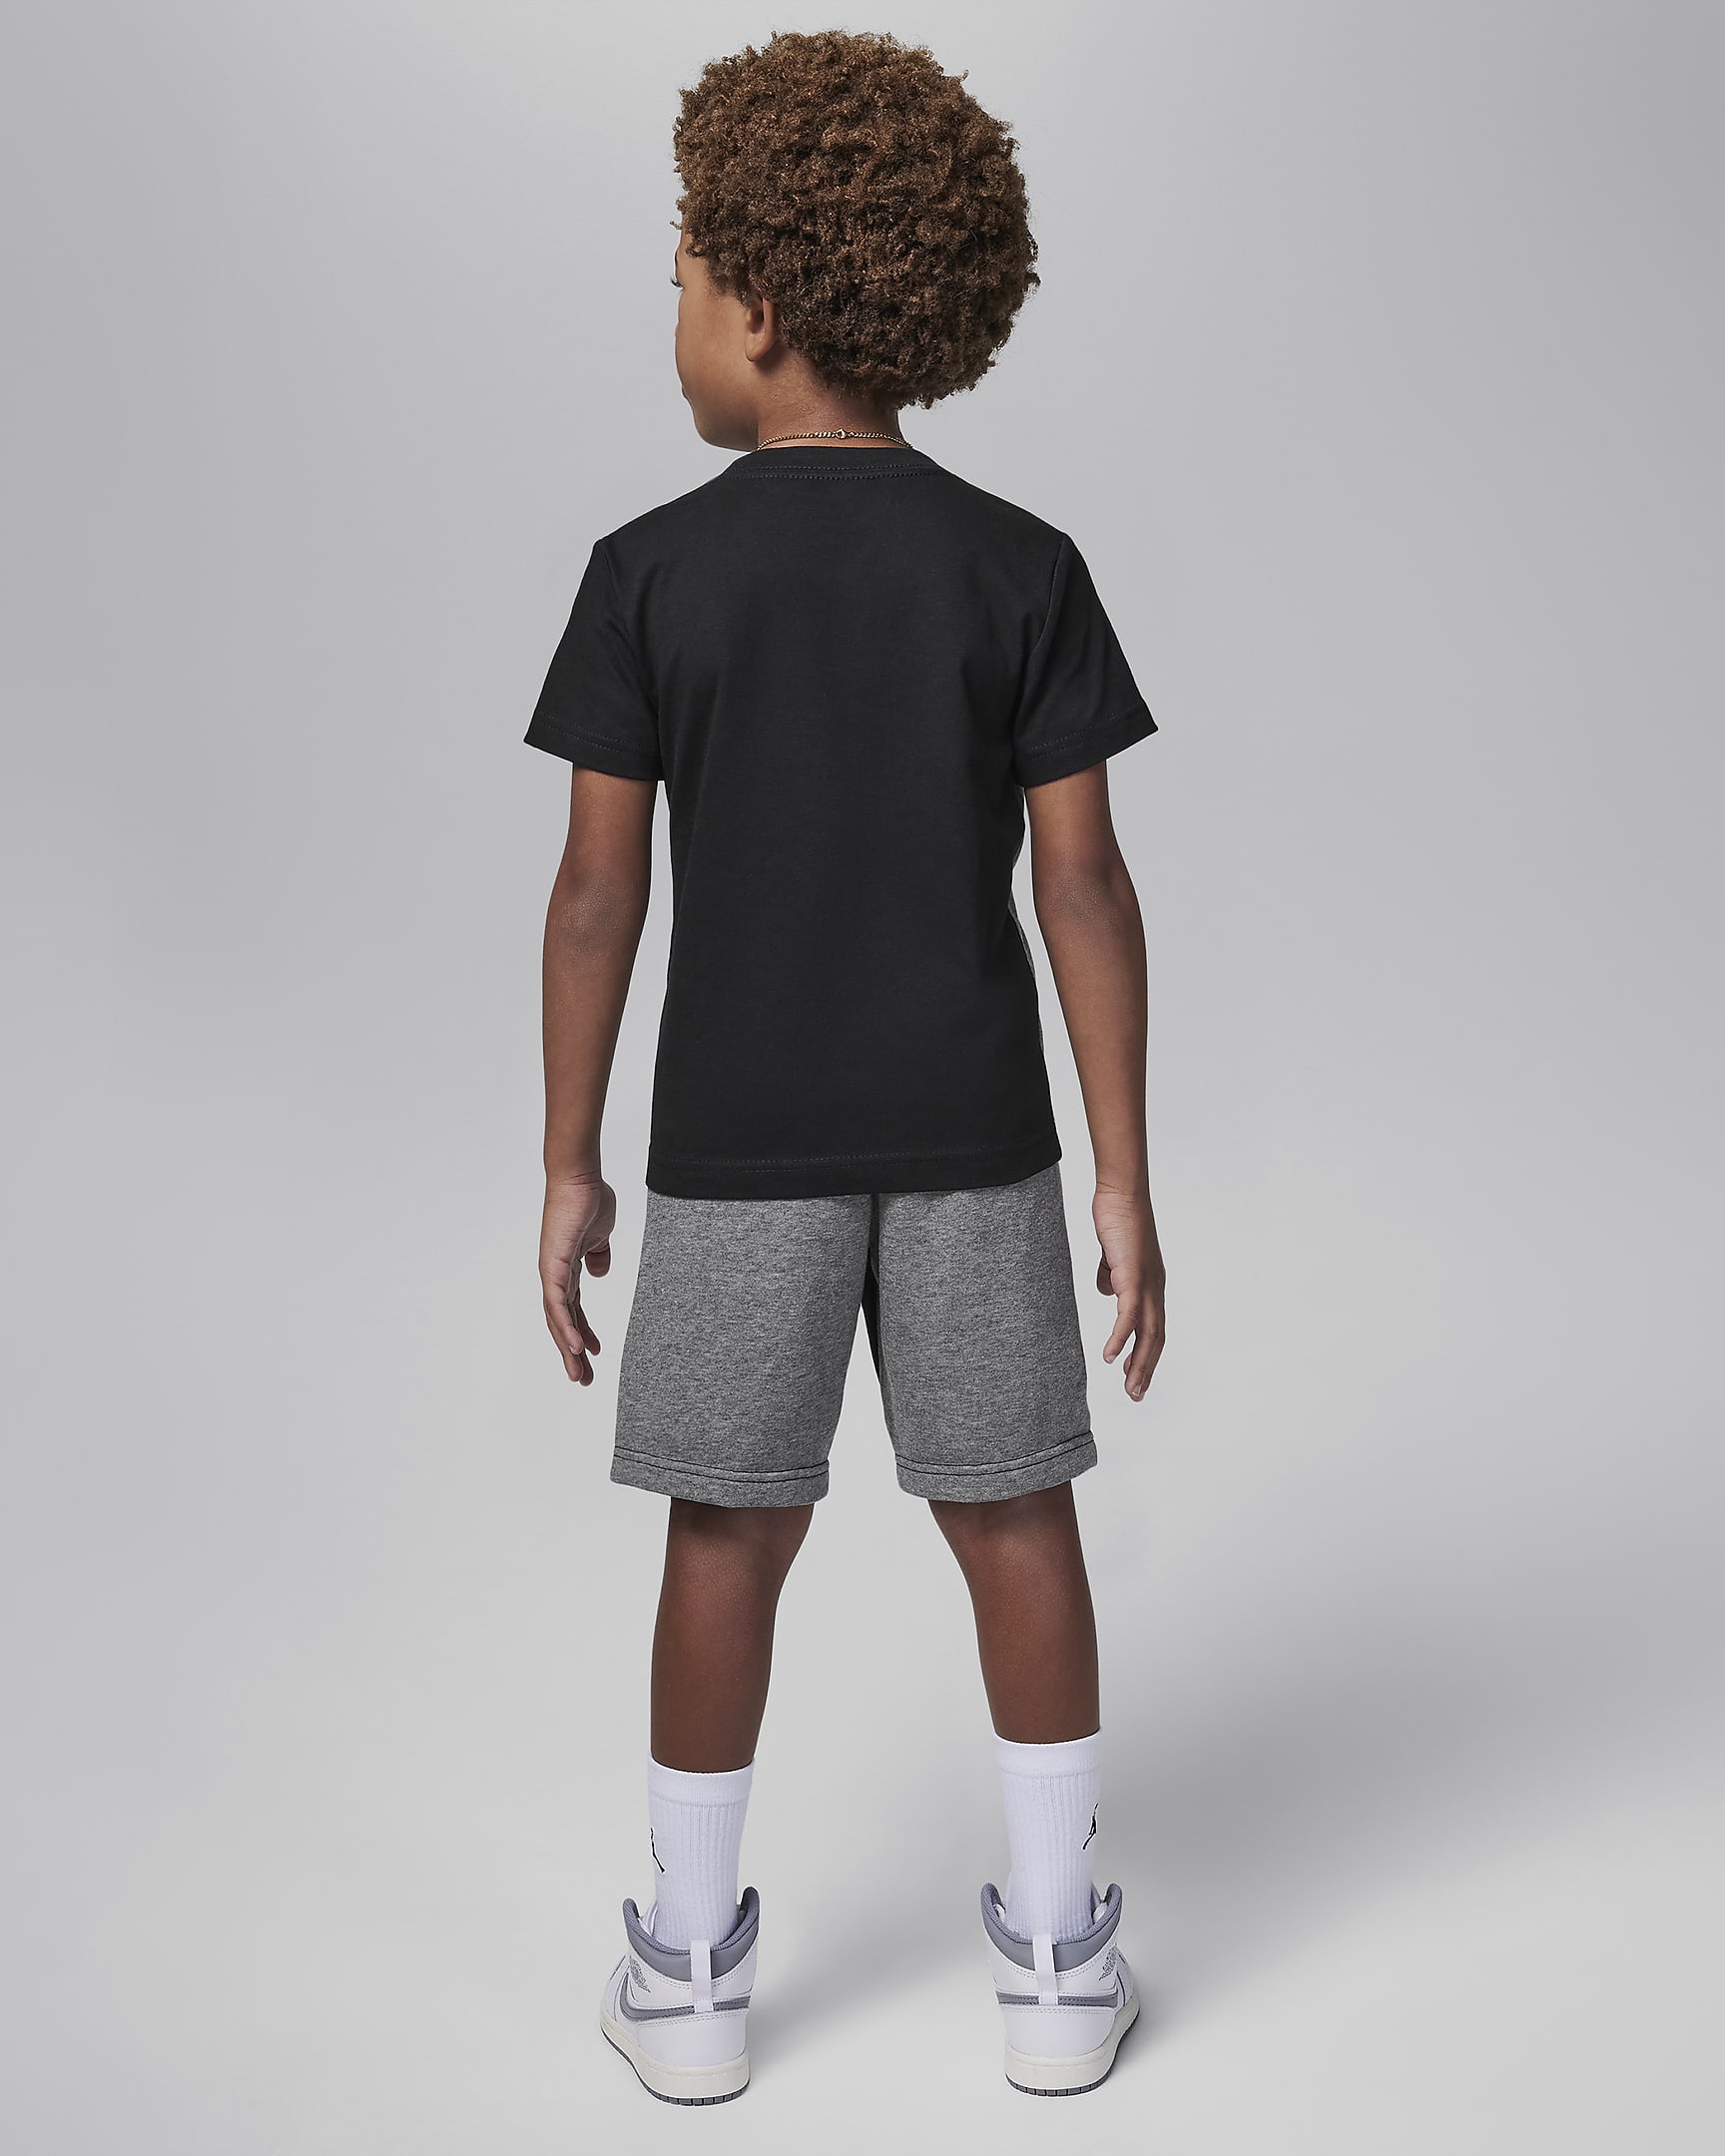 Air Jordan Little Kids' 2-Piece Shorts Set. Nike.com